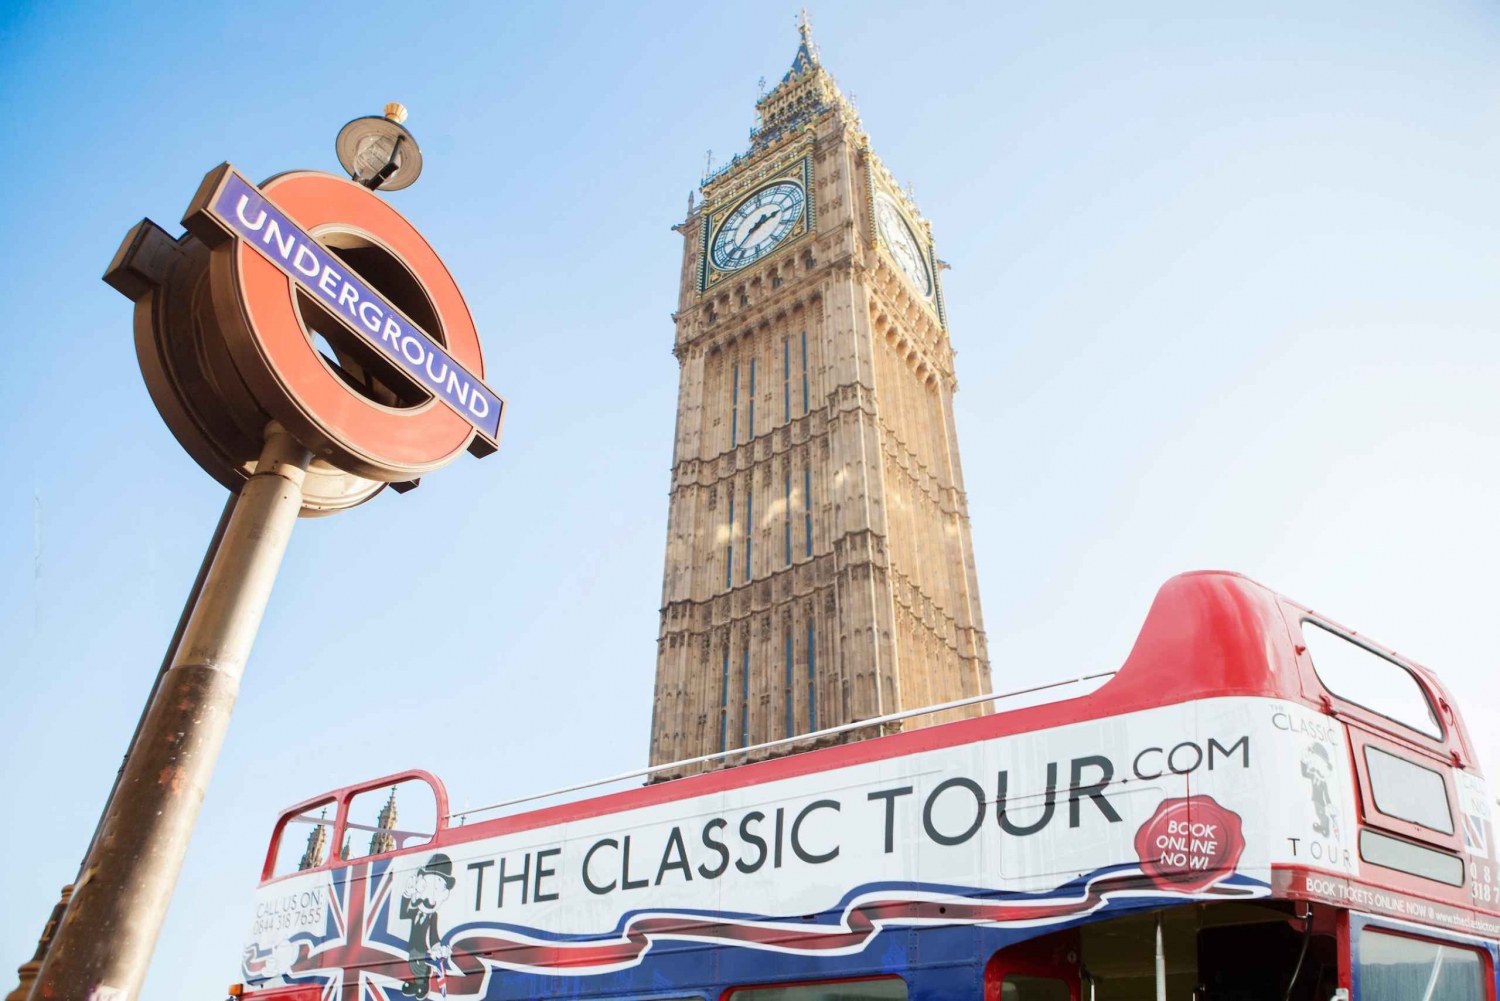 Londres: tour en autobús de época con guía